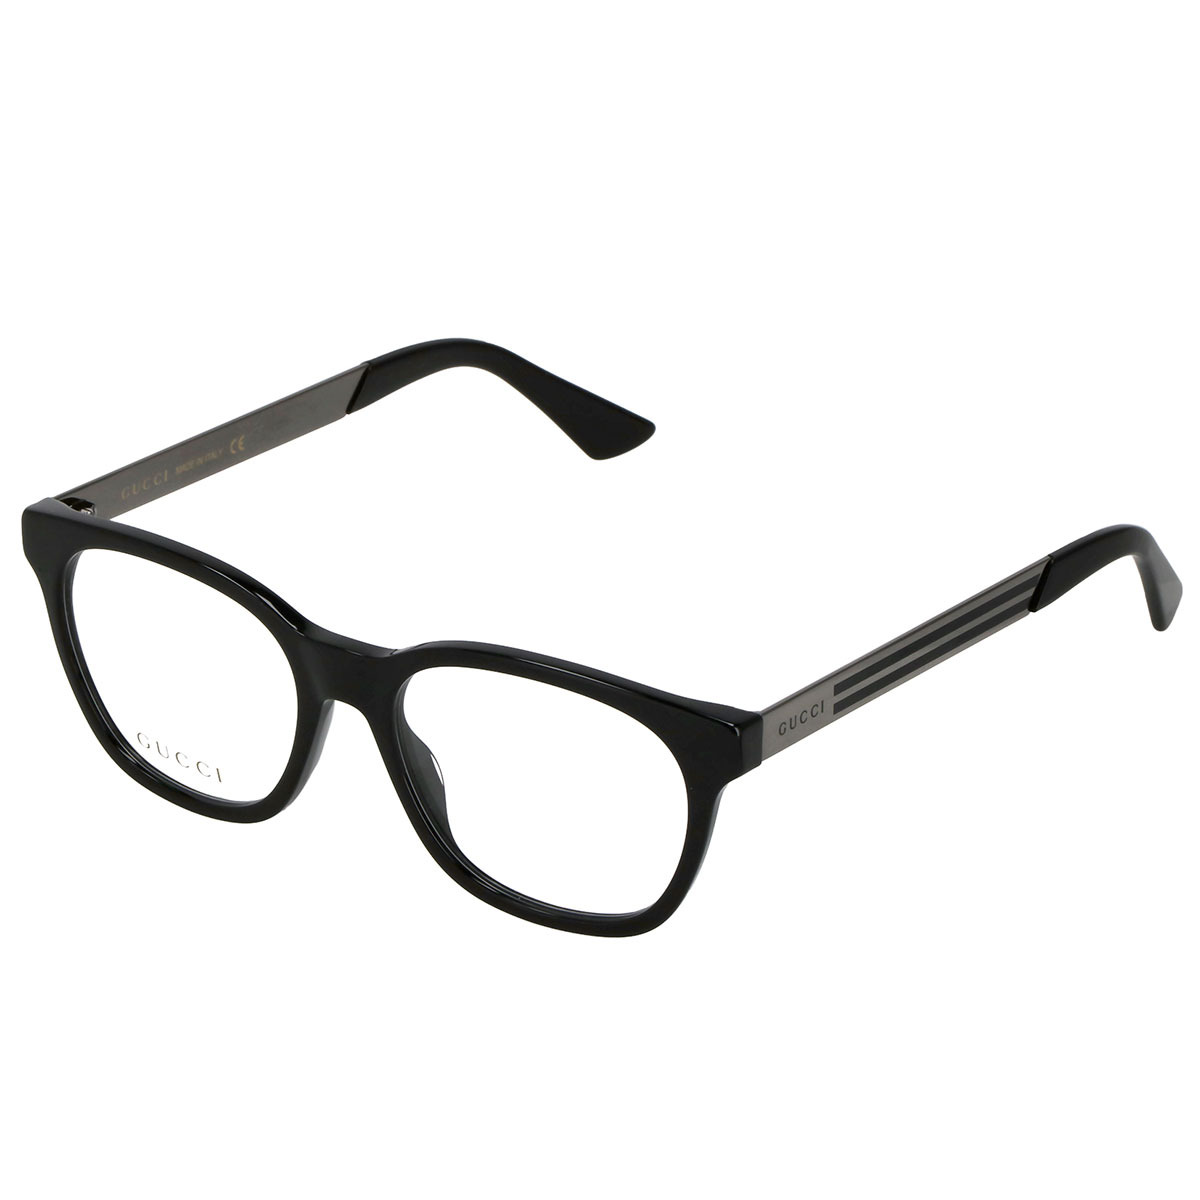 グッチ GUCCI オプティカルフレーム メガネ フレーム GG0690O-001 眼鏡 ウェリントン型 フレームのみ メンズ ブラック